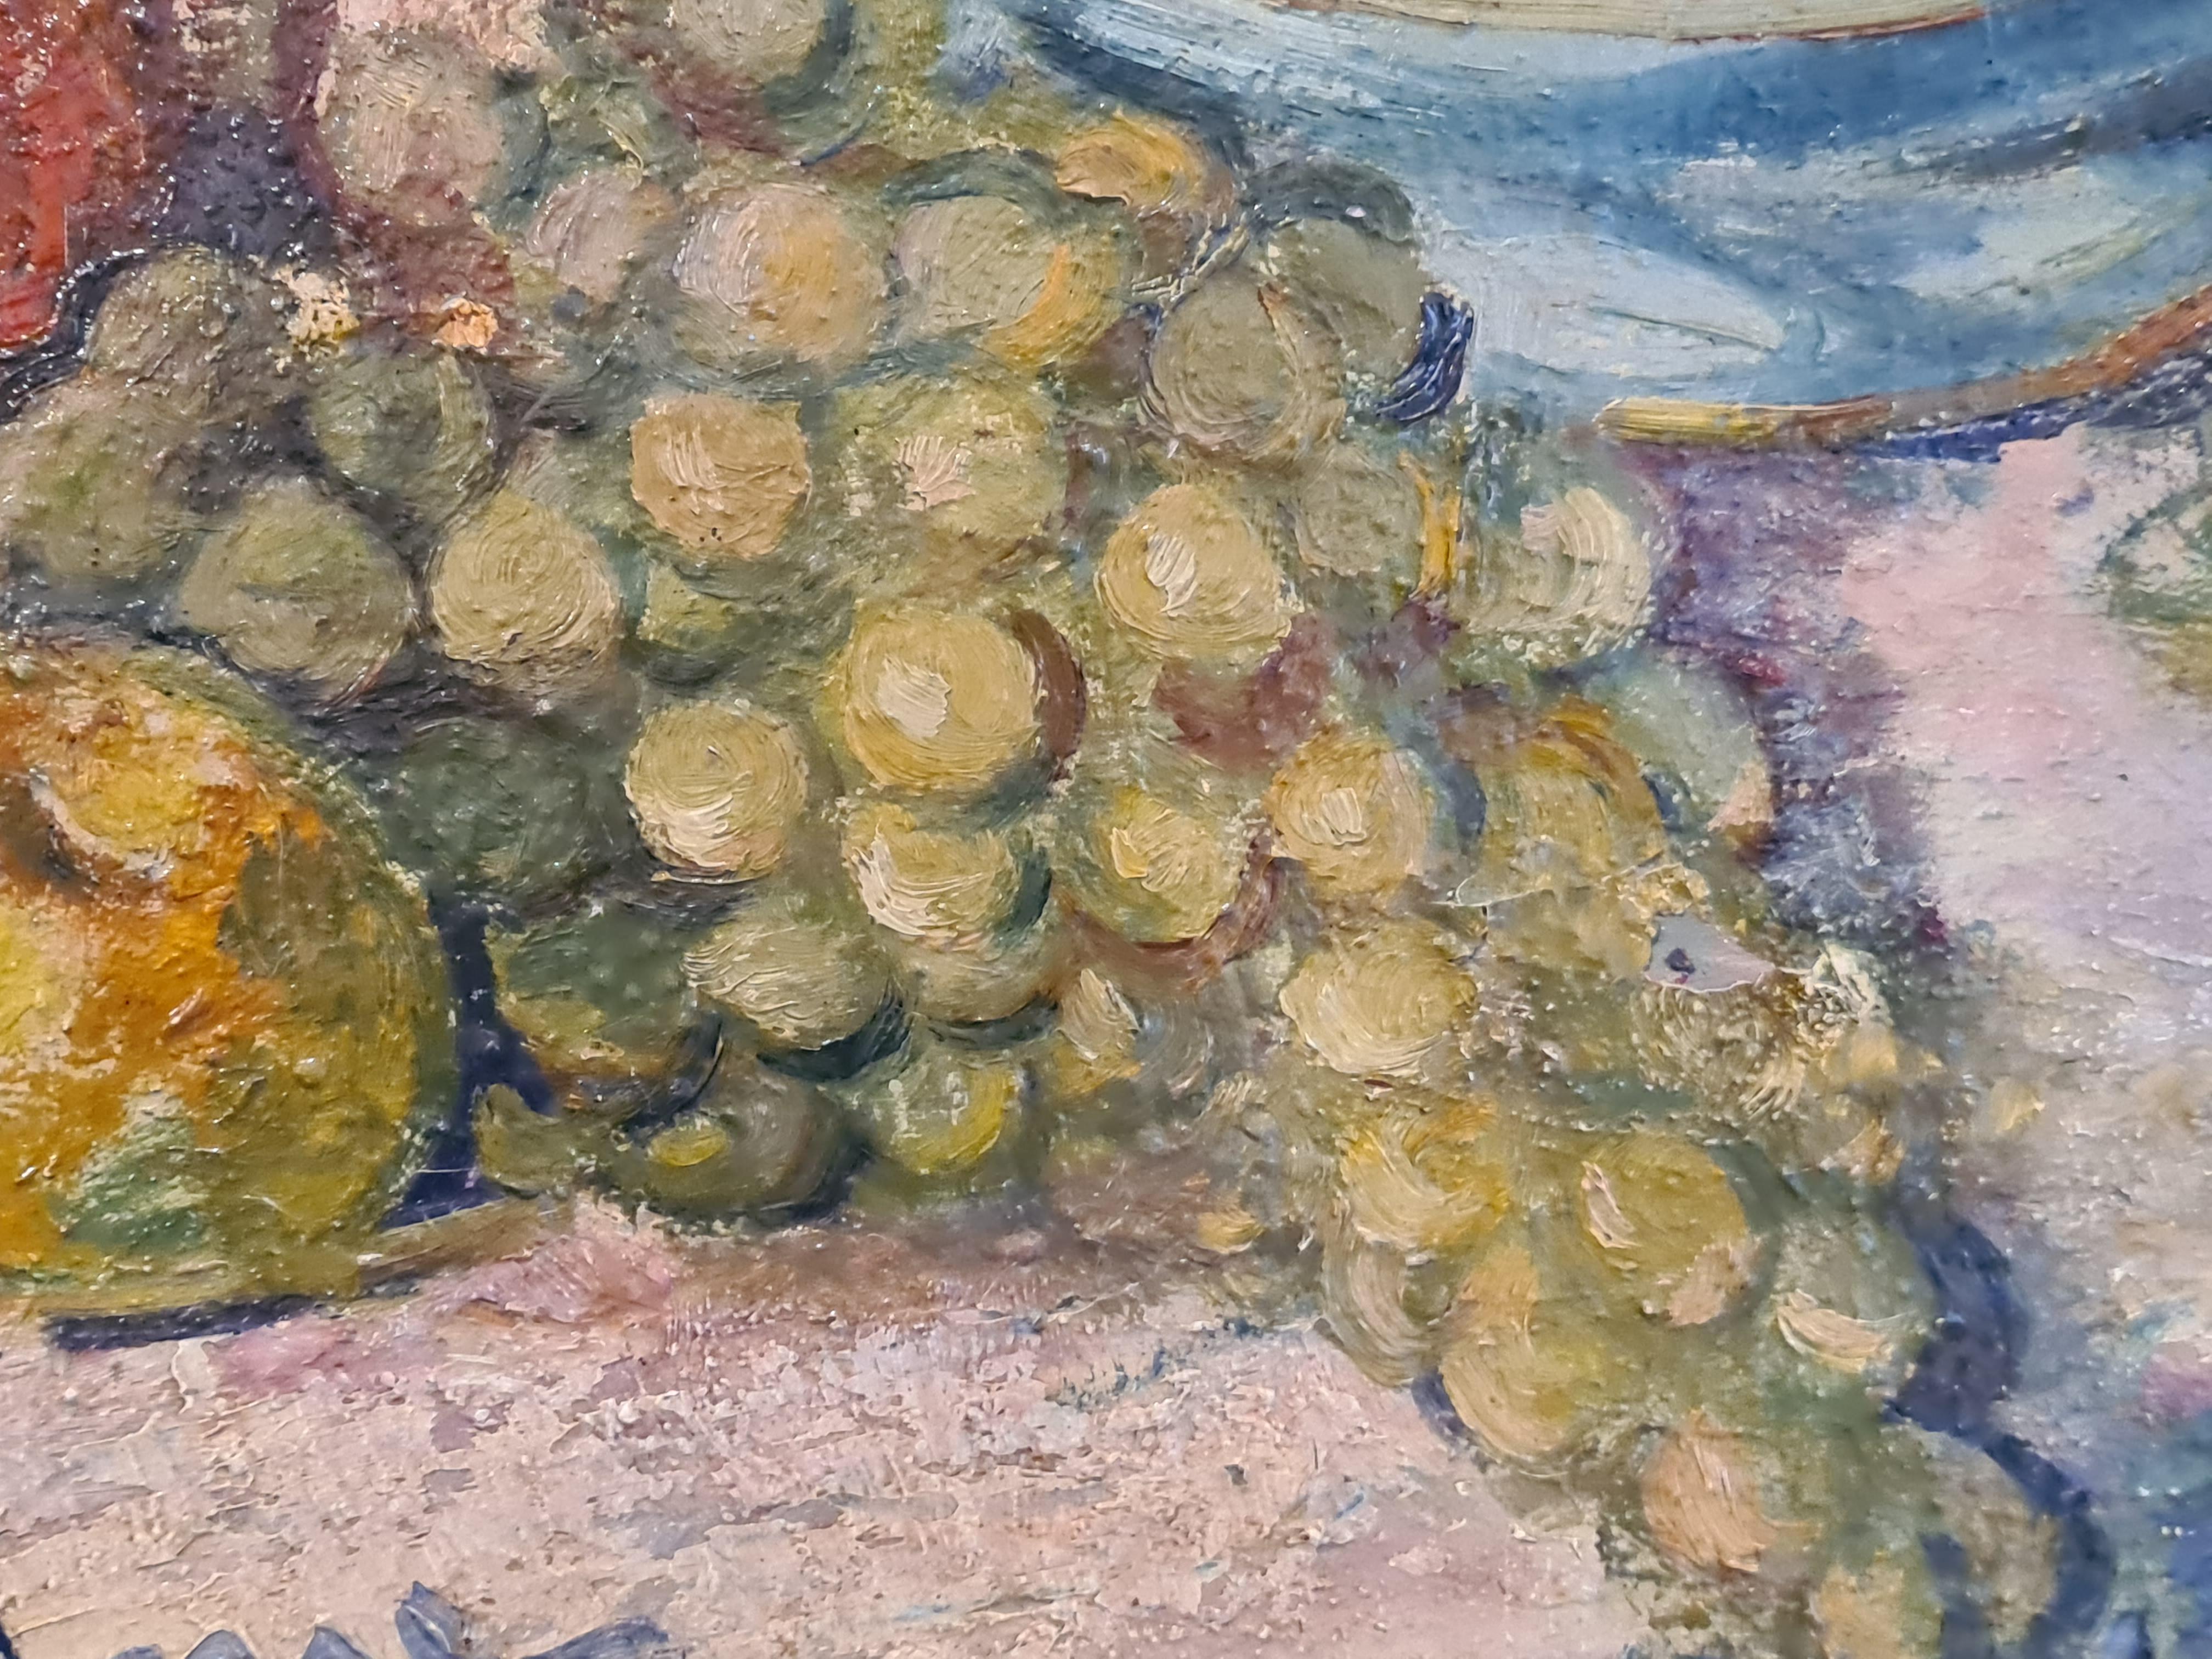 Nature morte à l'huile sur toile du milieu du 20e siècle par le célèbre artiste français Jean Arène. Signée en bas au milieu, présentée dans un beau cadre en bois avec filet doré.

Une charmante nature morte de fruits et d'une coupe sur une table,